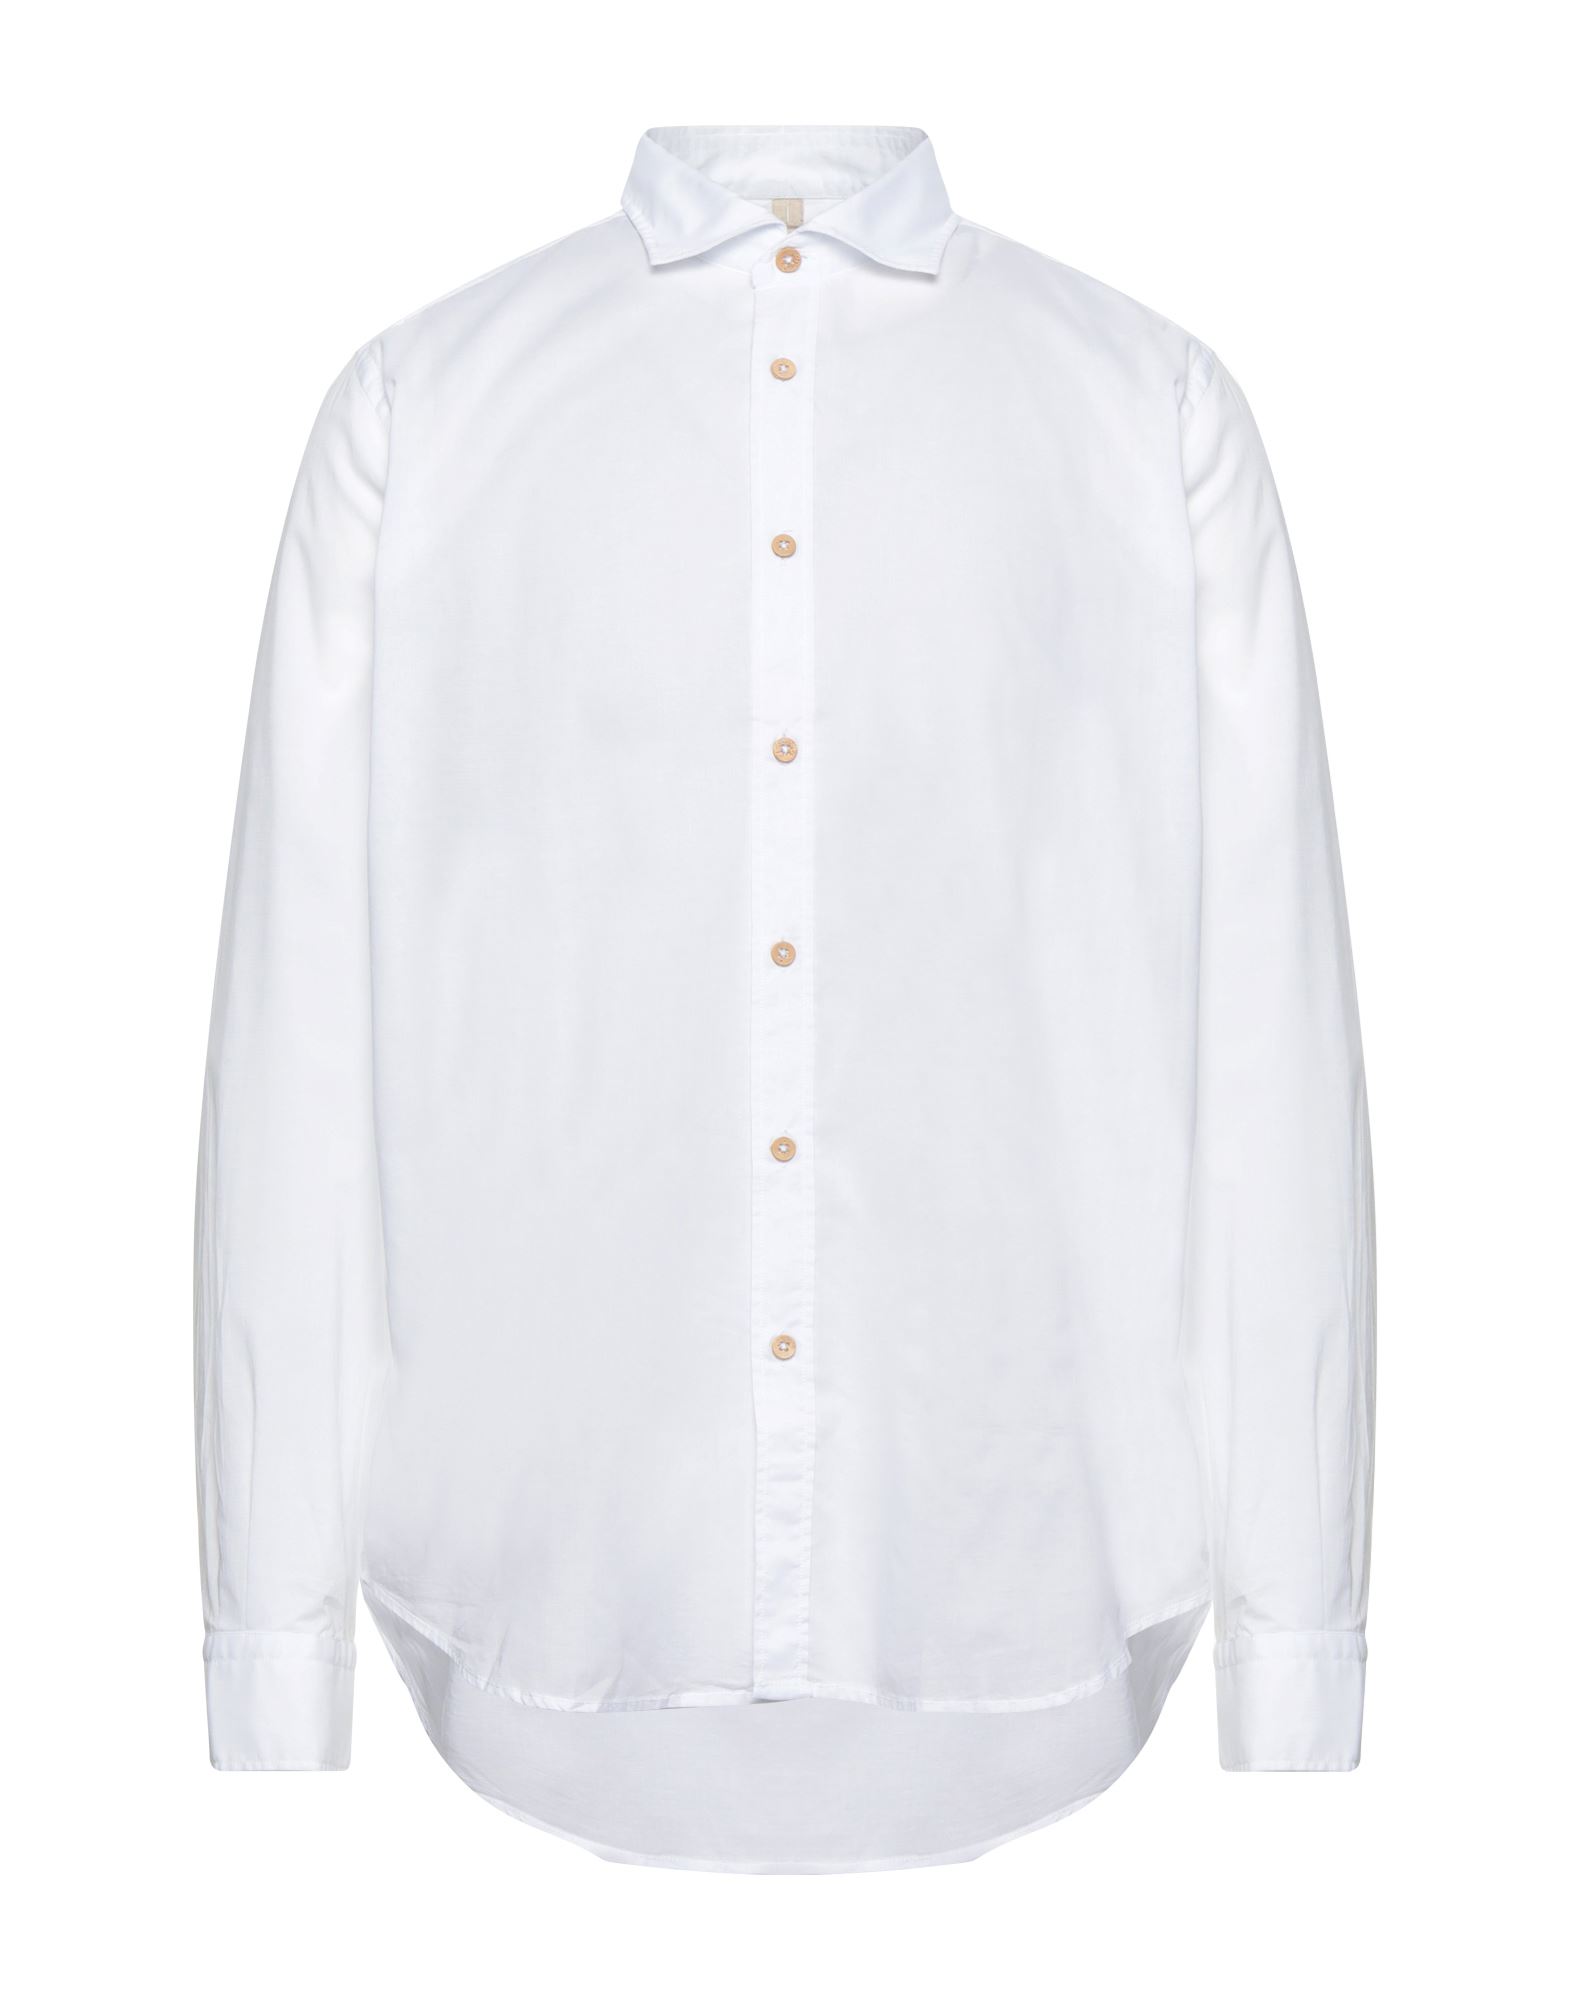 Portofiori Shirts In White